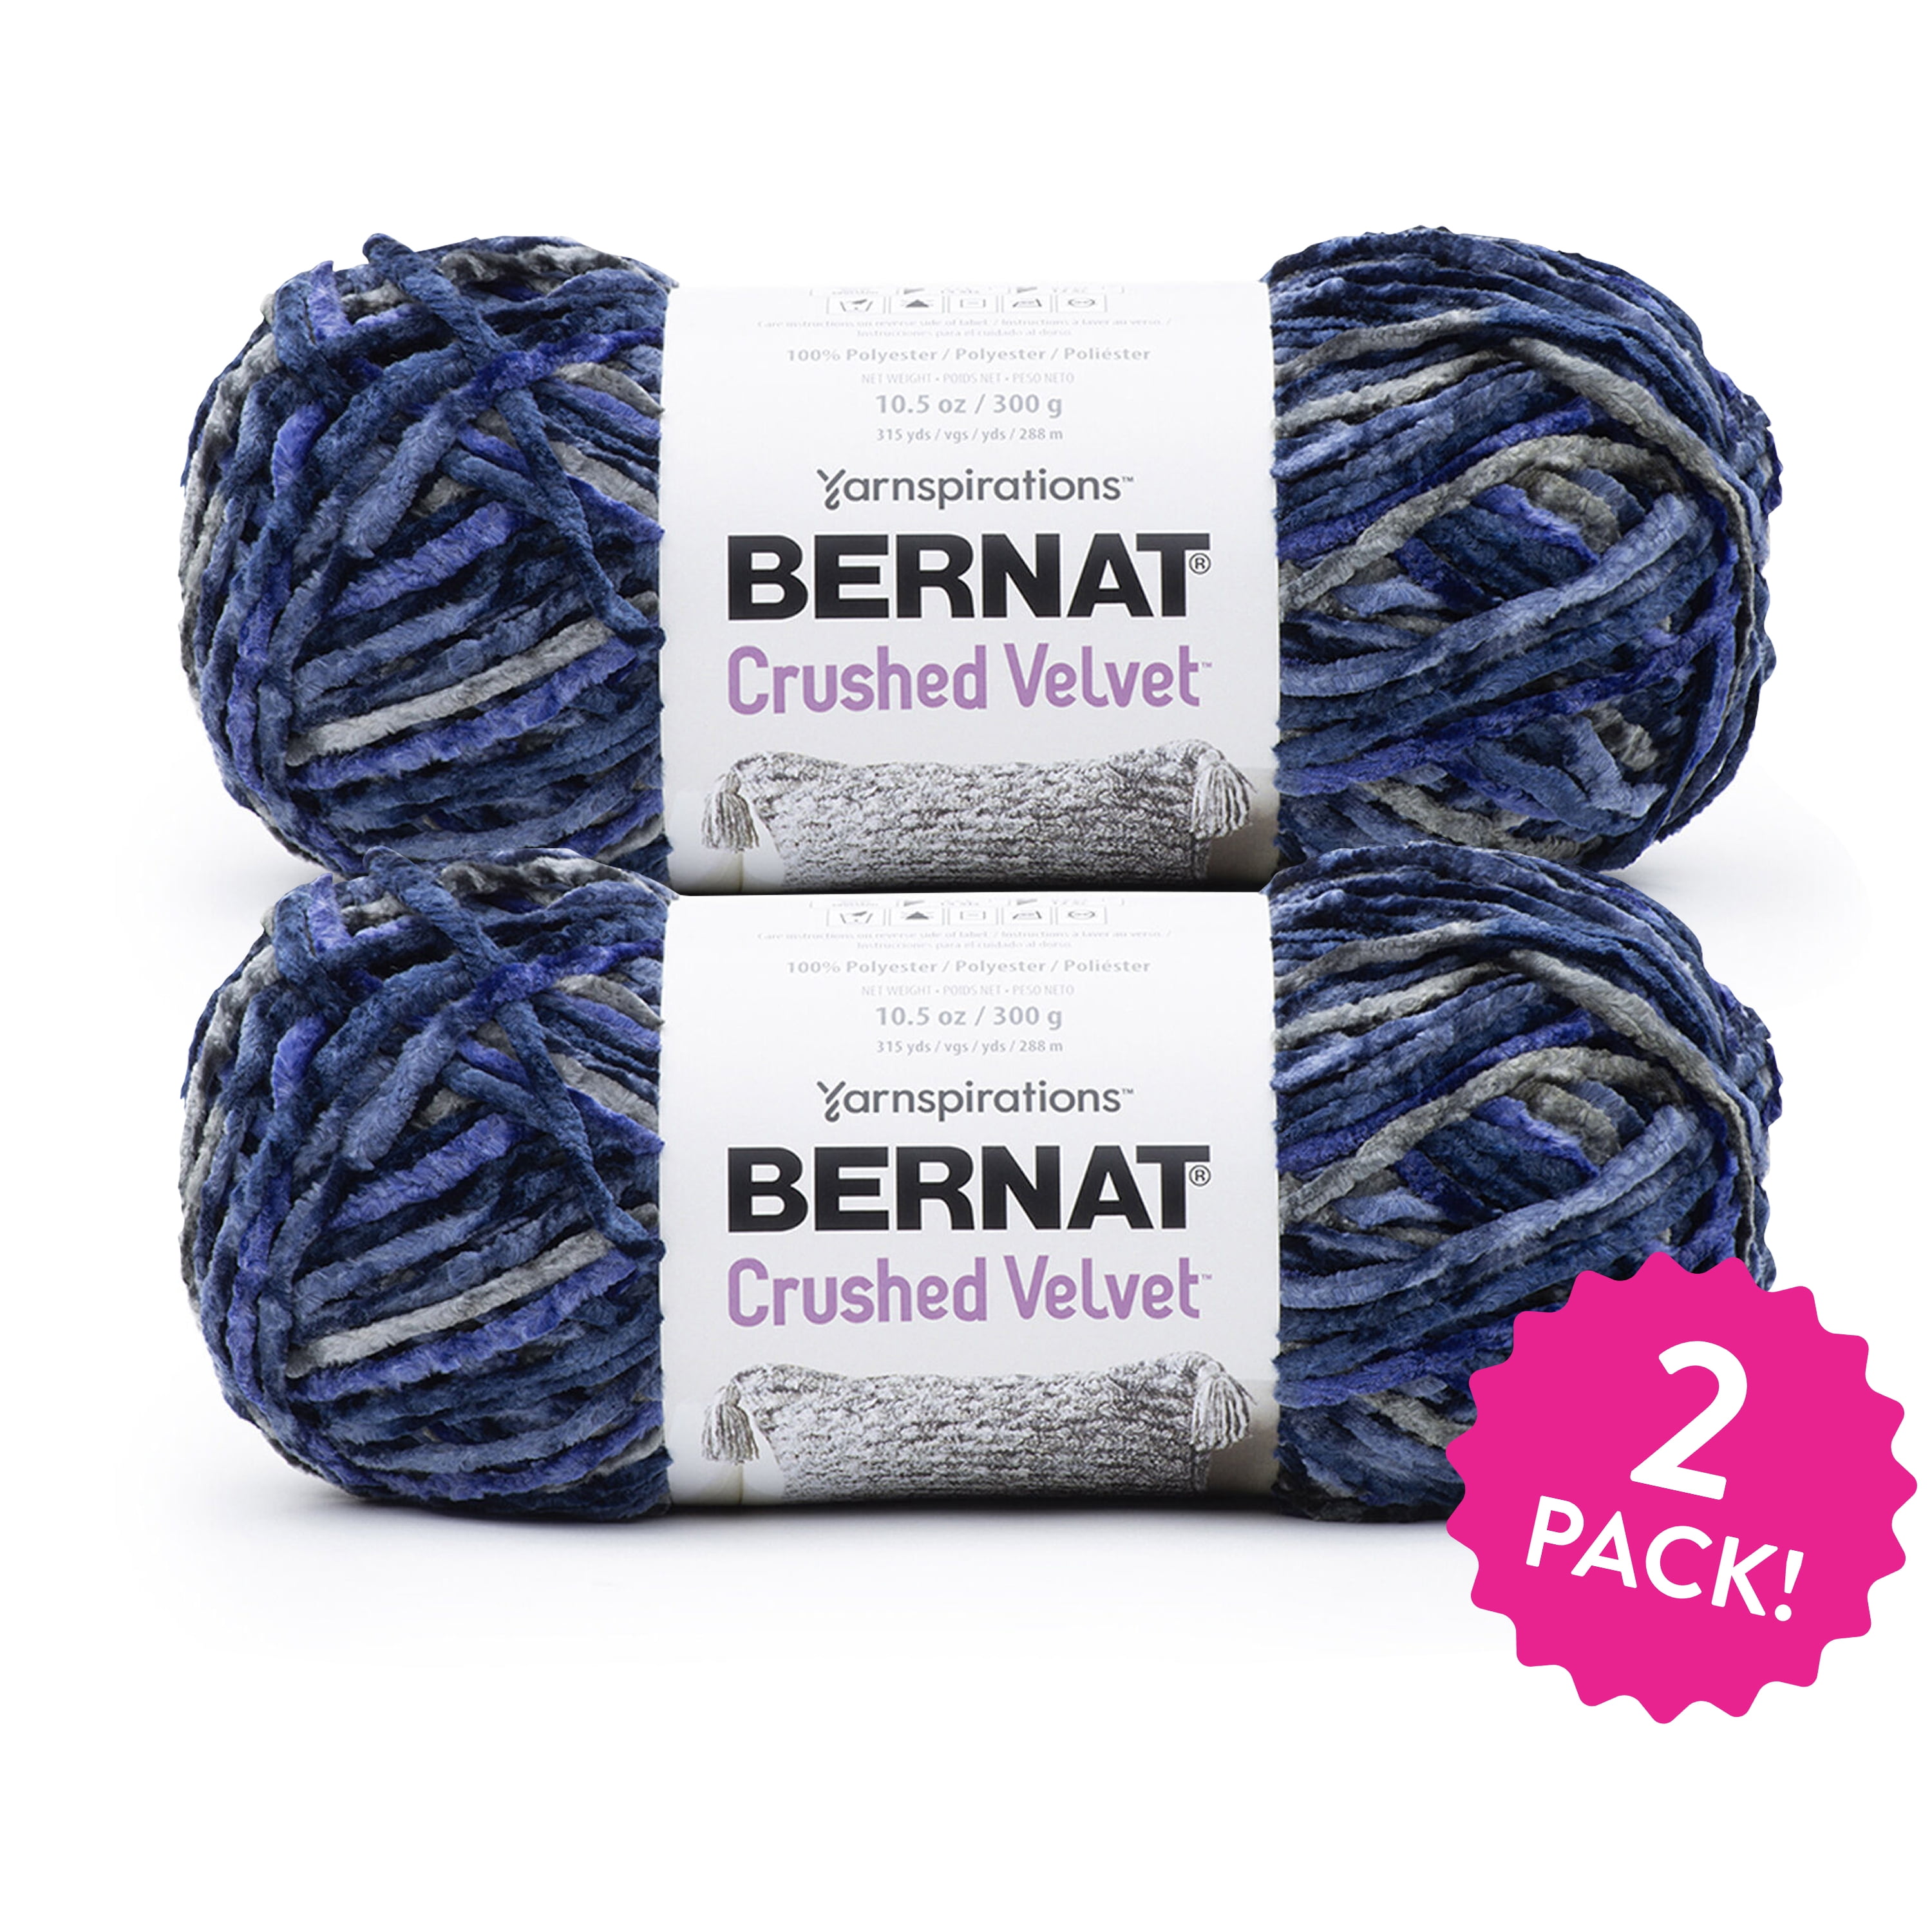 Bernat Crushed Velvet™ 100% Polyester Navy Yarn, 315 yd (2 Pack)